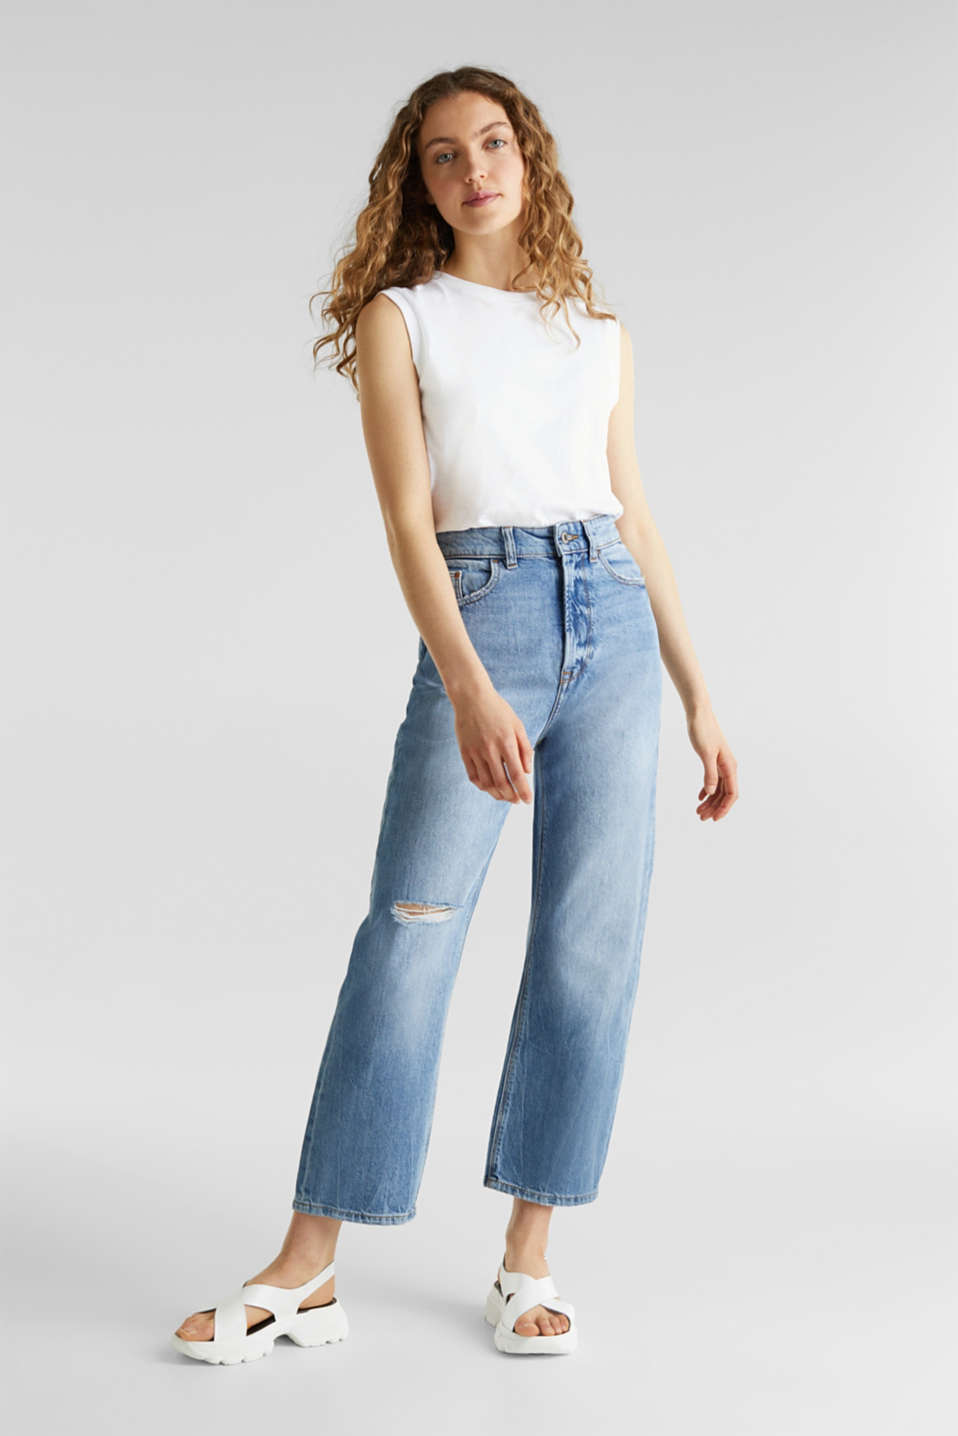 Fonkelnieuw edc - Enkellange jeans met wijde pijpen kopen in de online shop XH-52